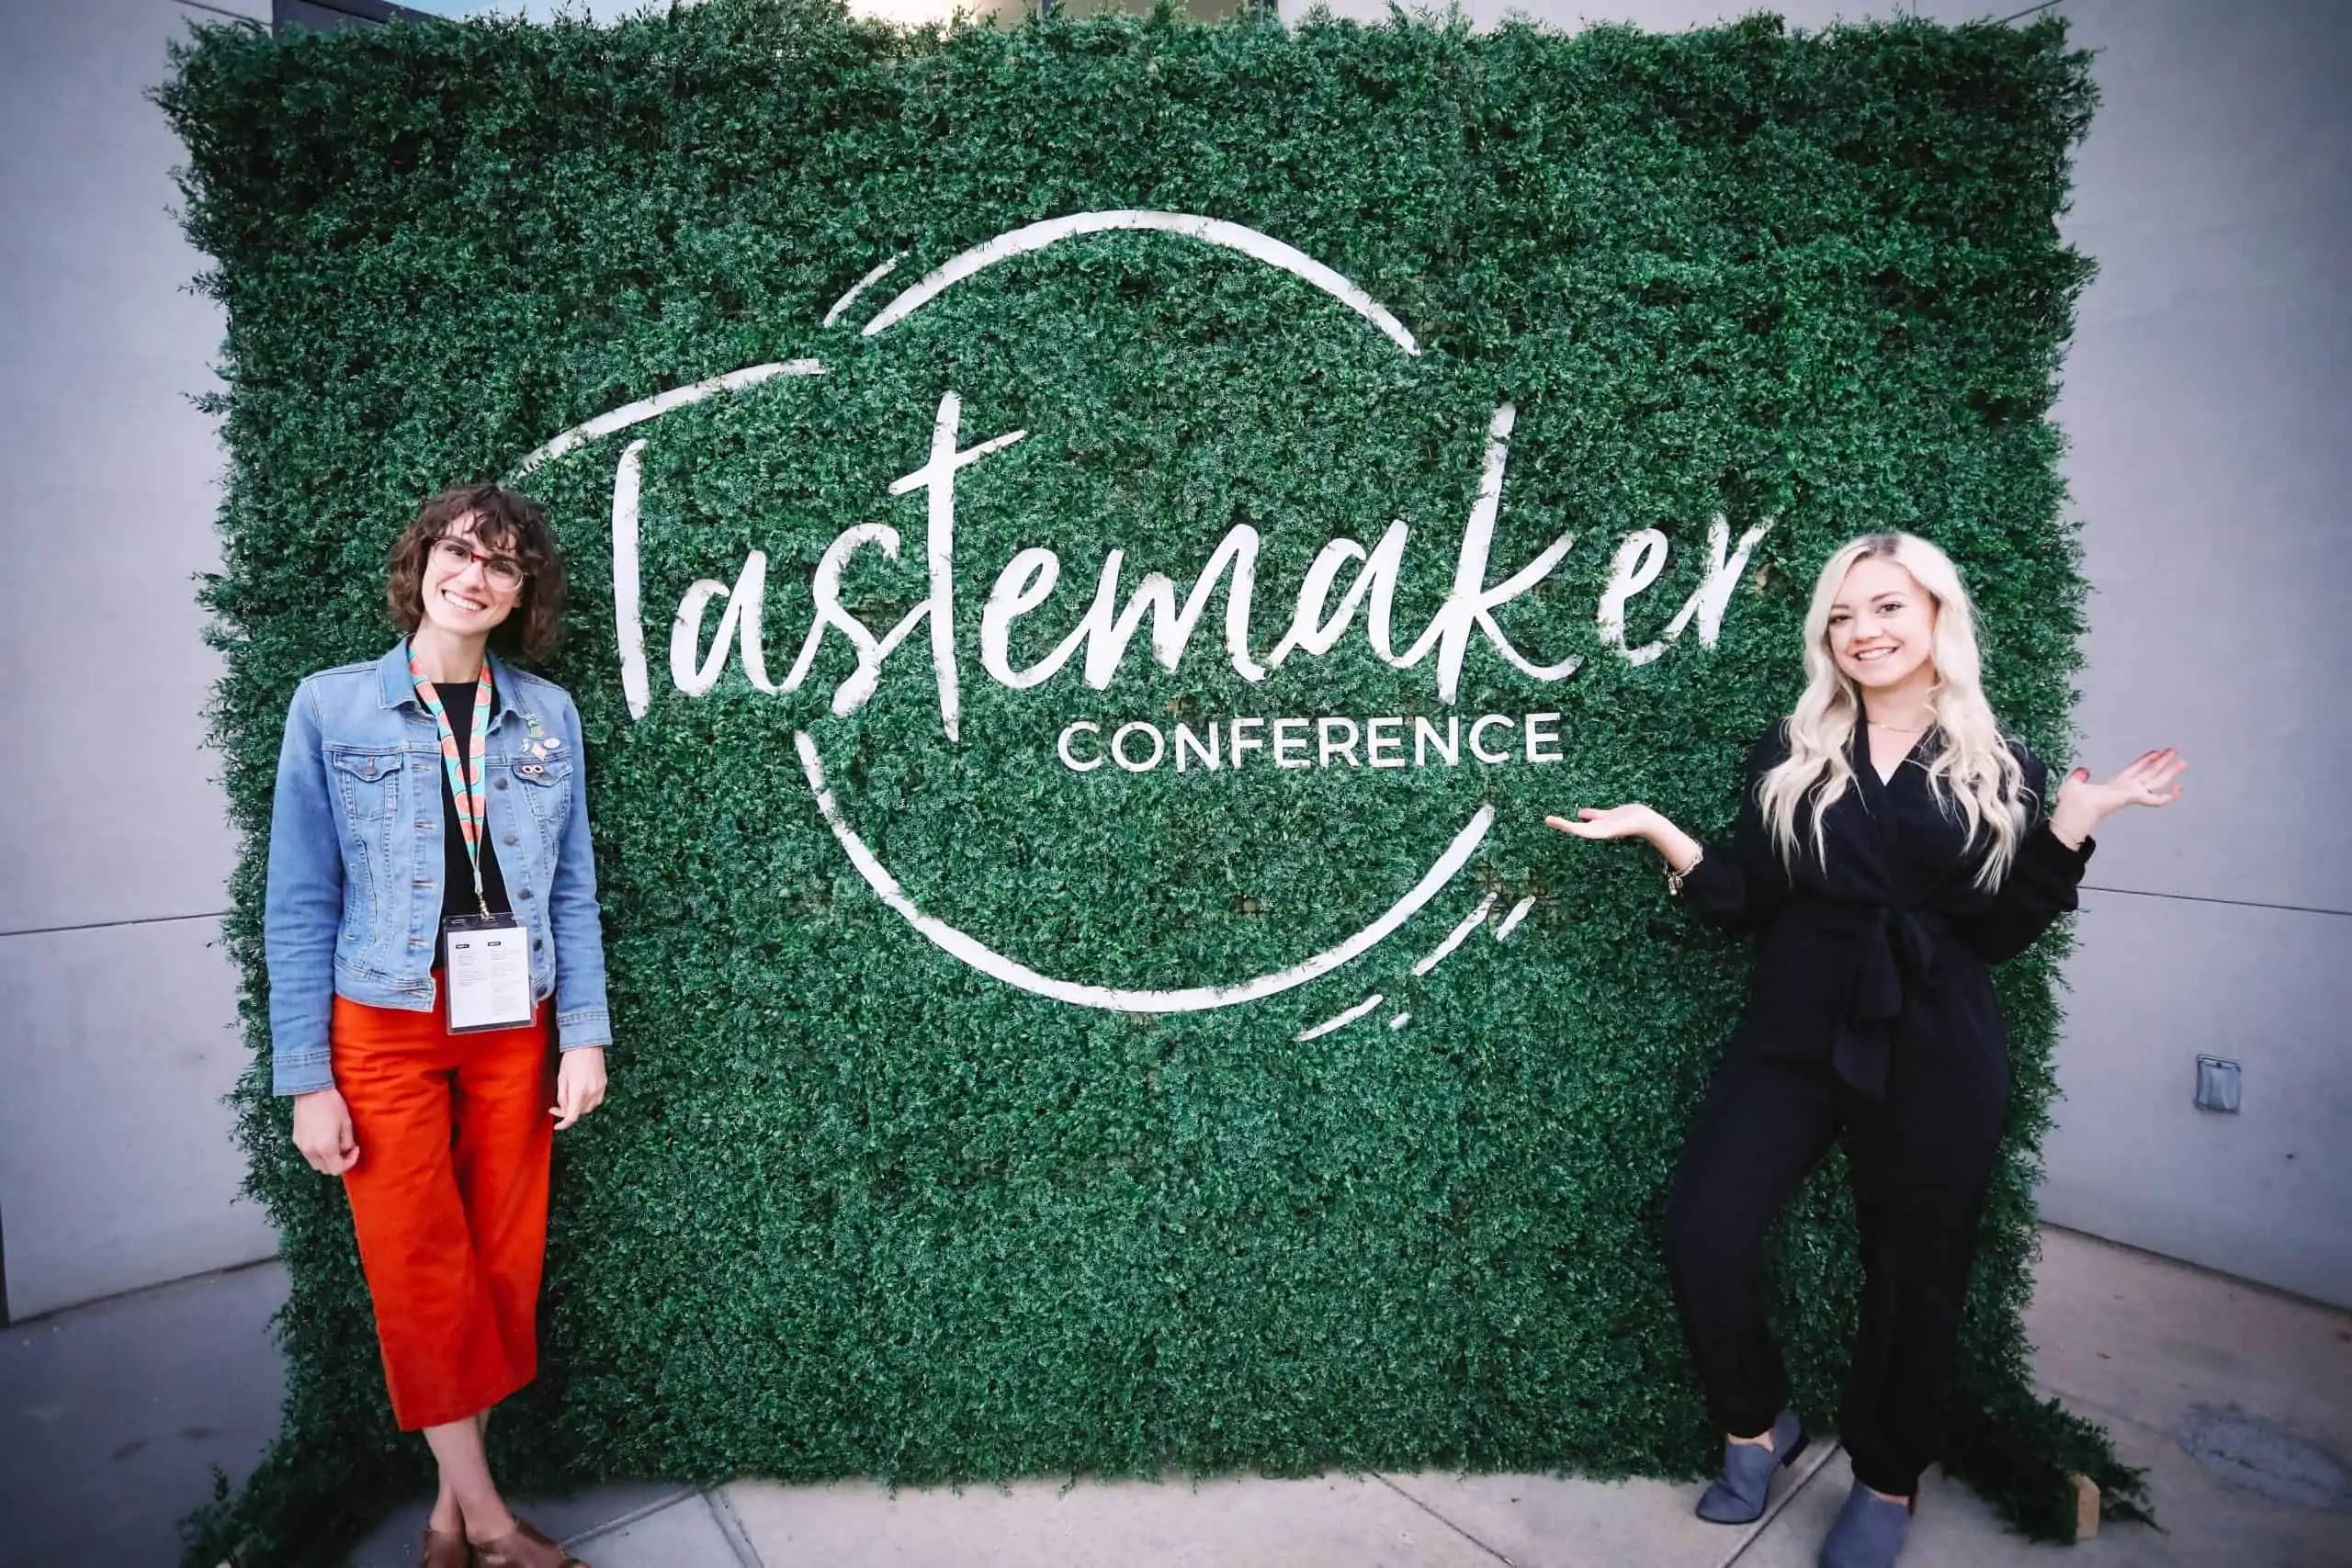 tastemaker conference, conference tips